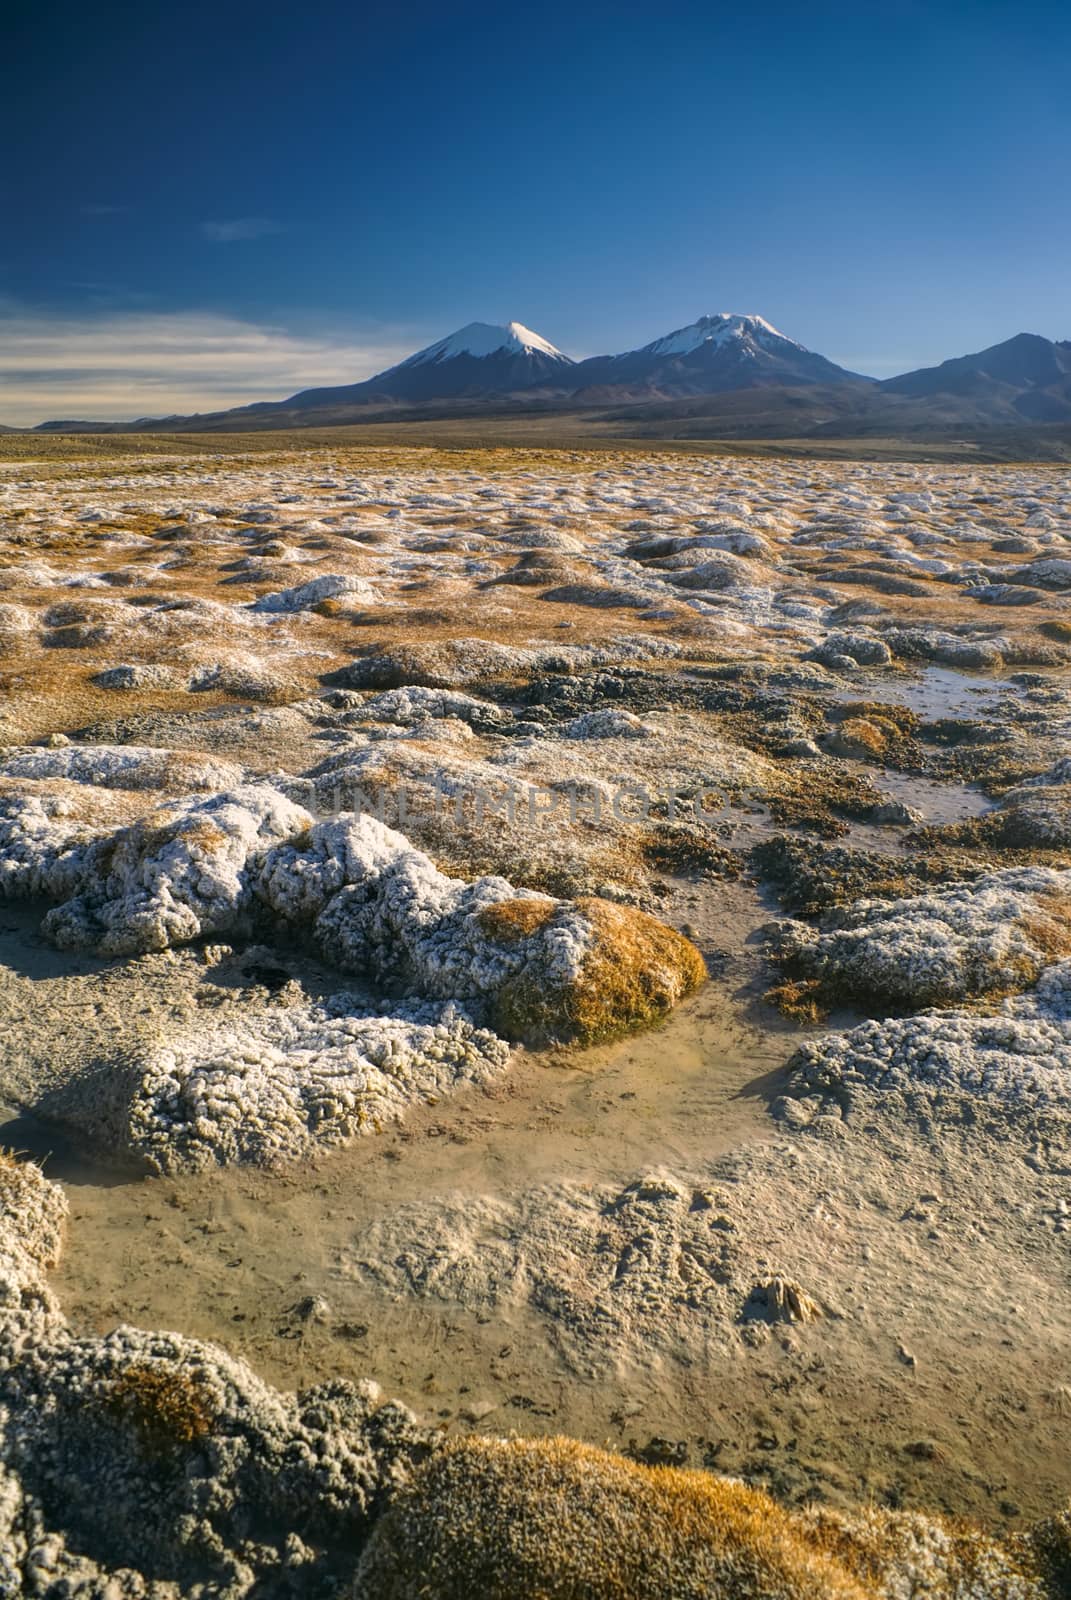 Scenic view of bolivian volcanoes, highest peaks in Sajama national park in Bolivia